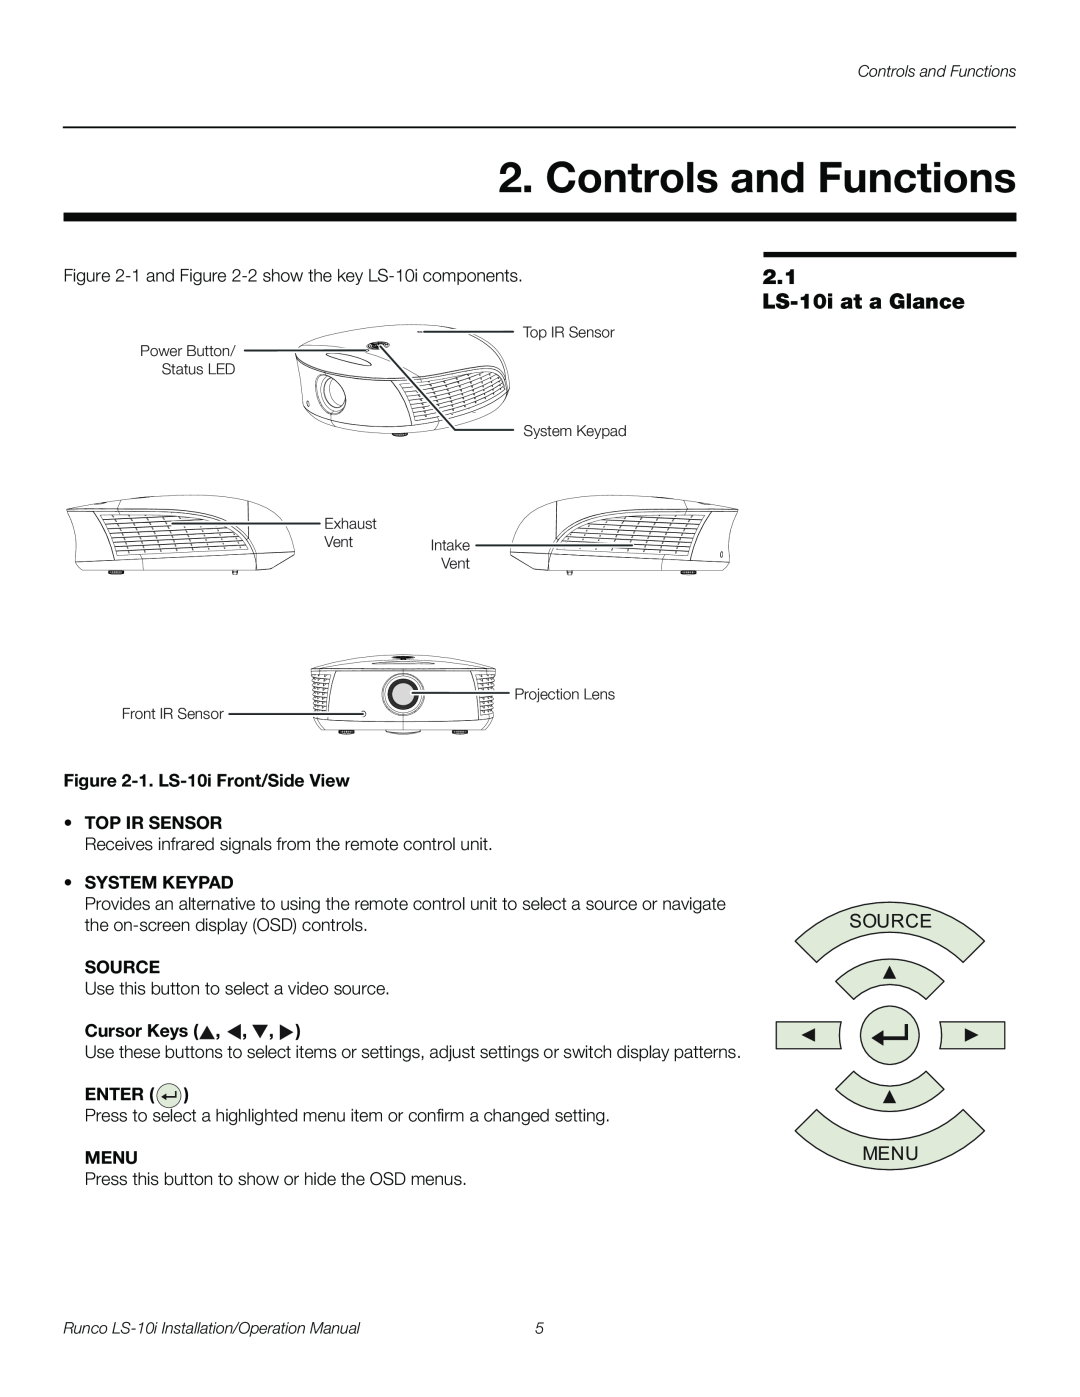 Runco LS-10I Controls and Functions, 2.1 LS-10iat a Glance, Source, Menu, 1. LS-10iFront/Side View •TOP IR SENSOR, Enter 